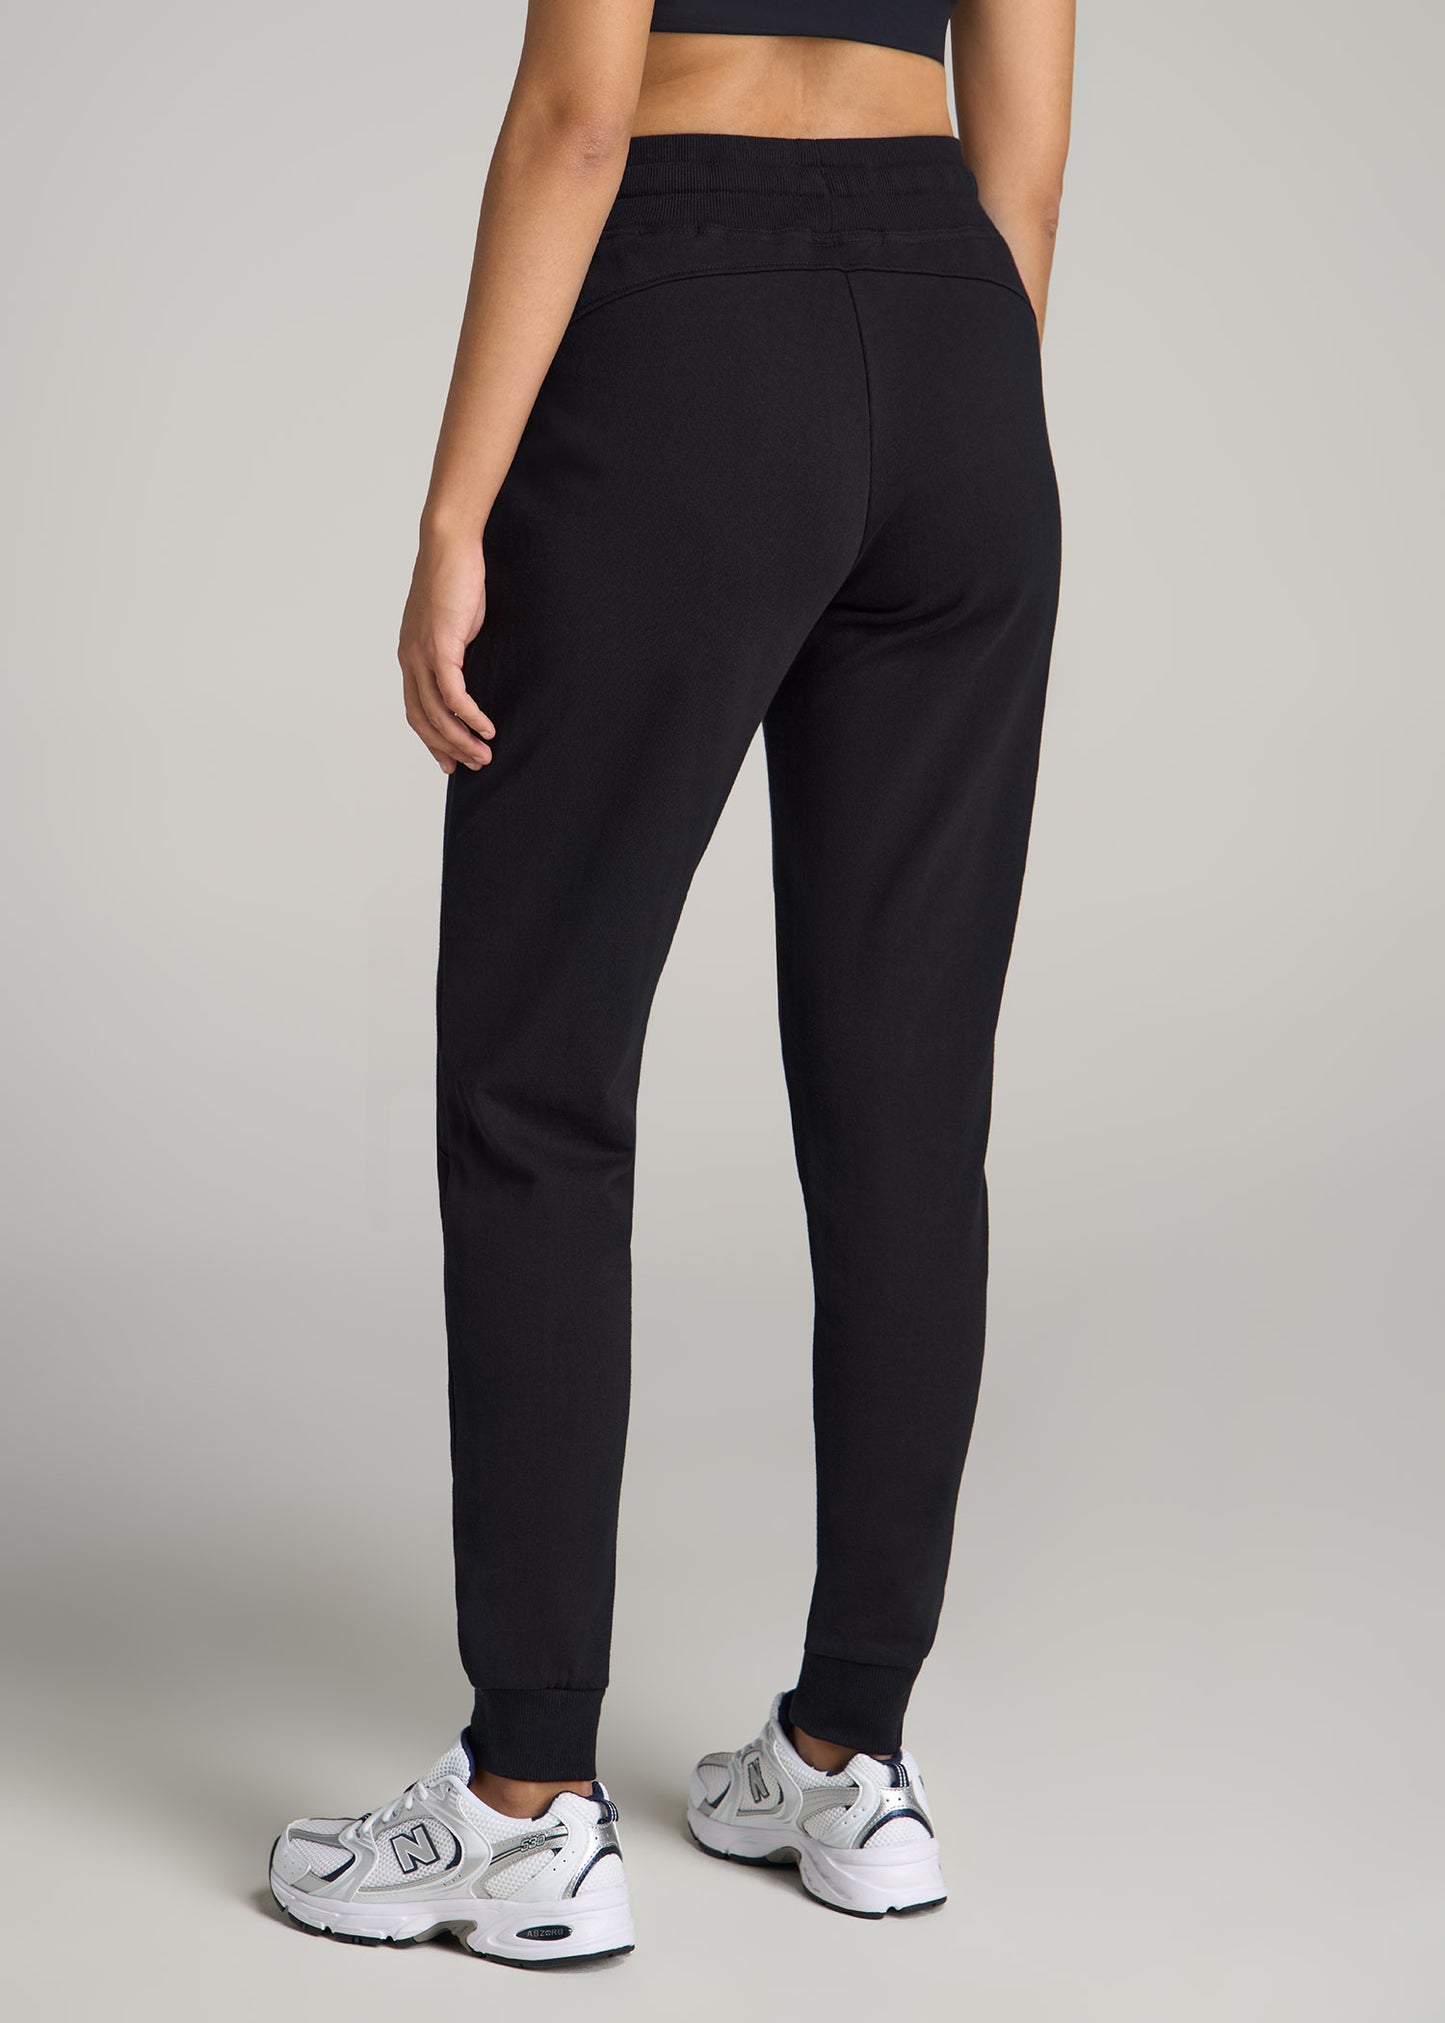 Wearever Slim-Fit Sweatpants for Tall Women